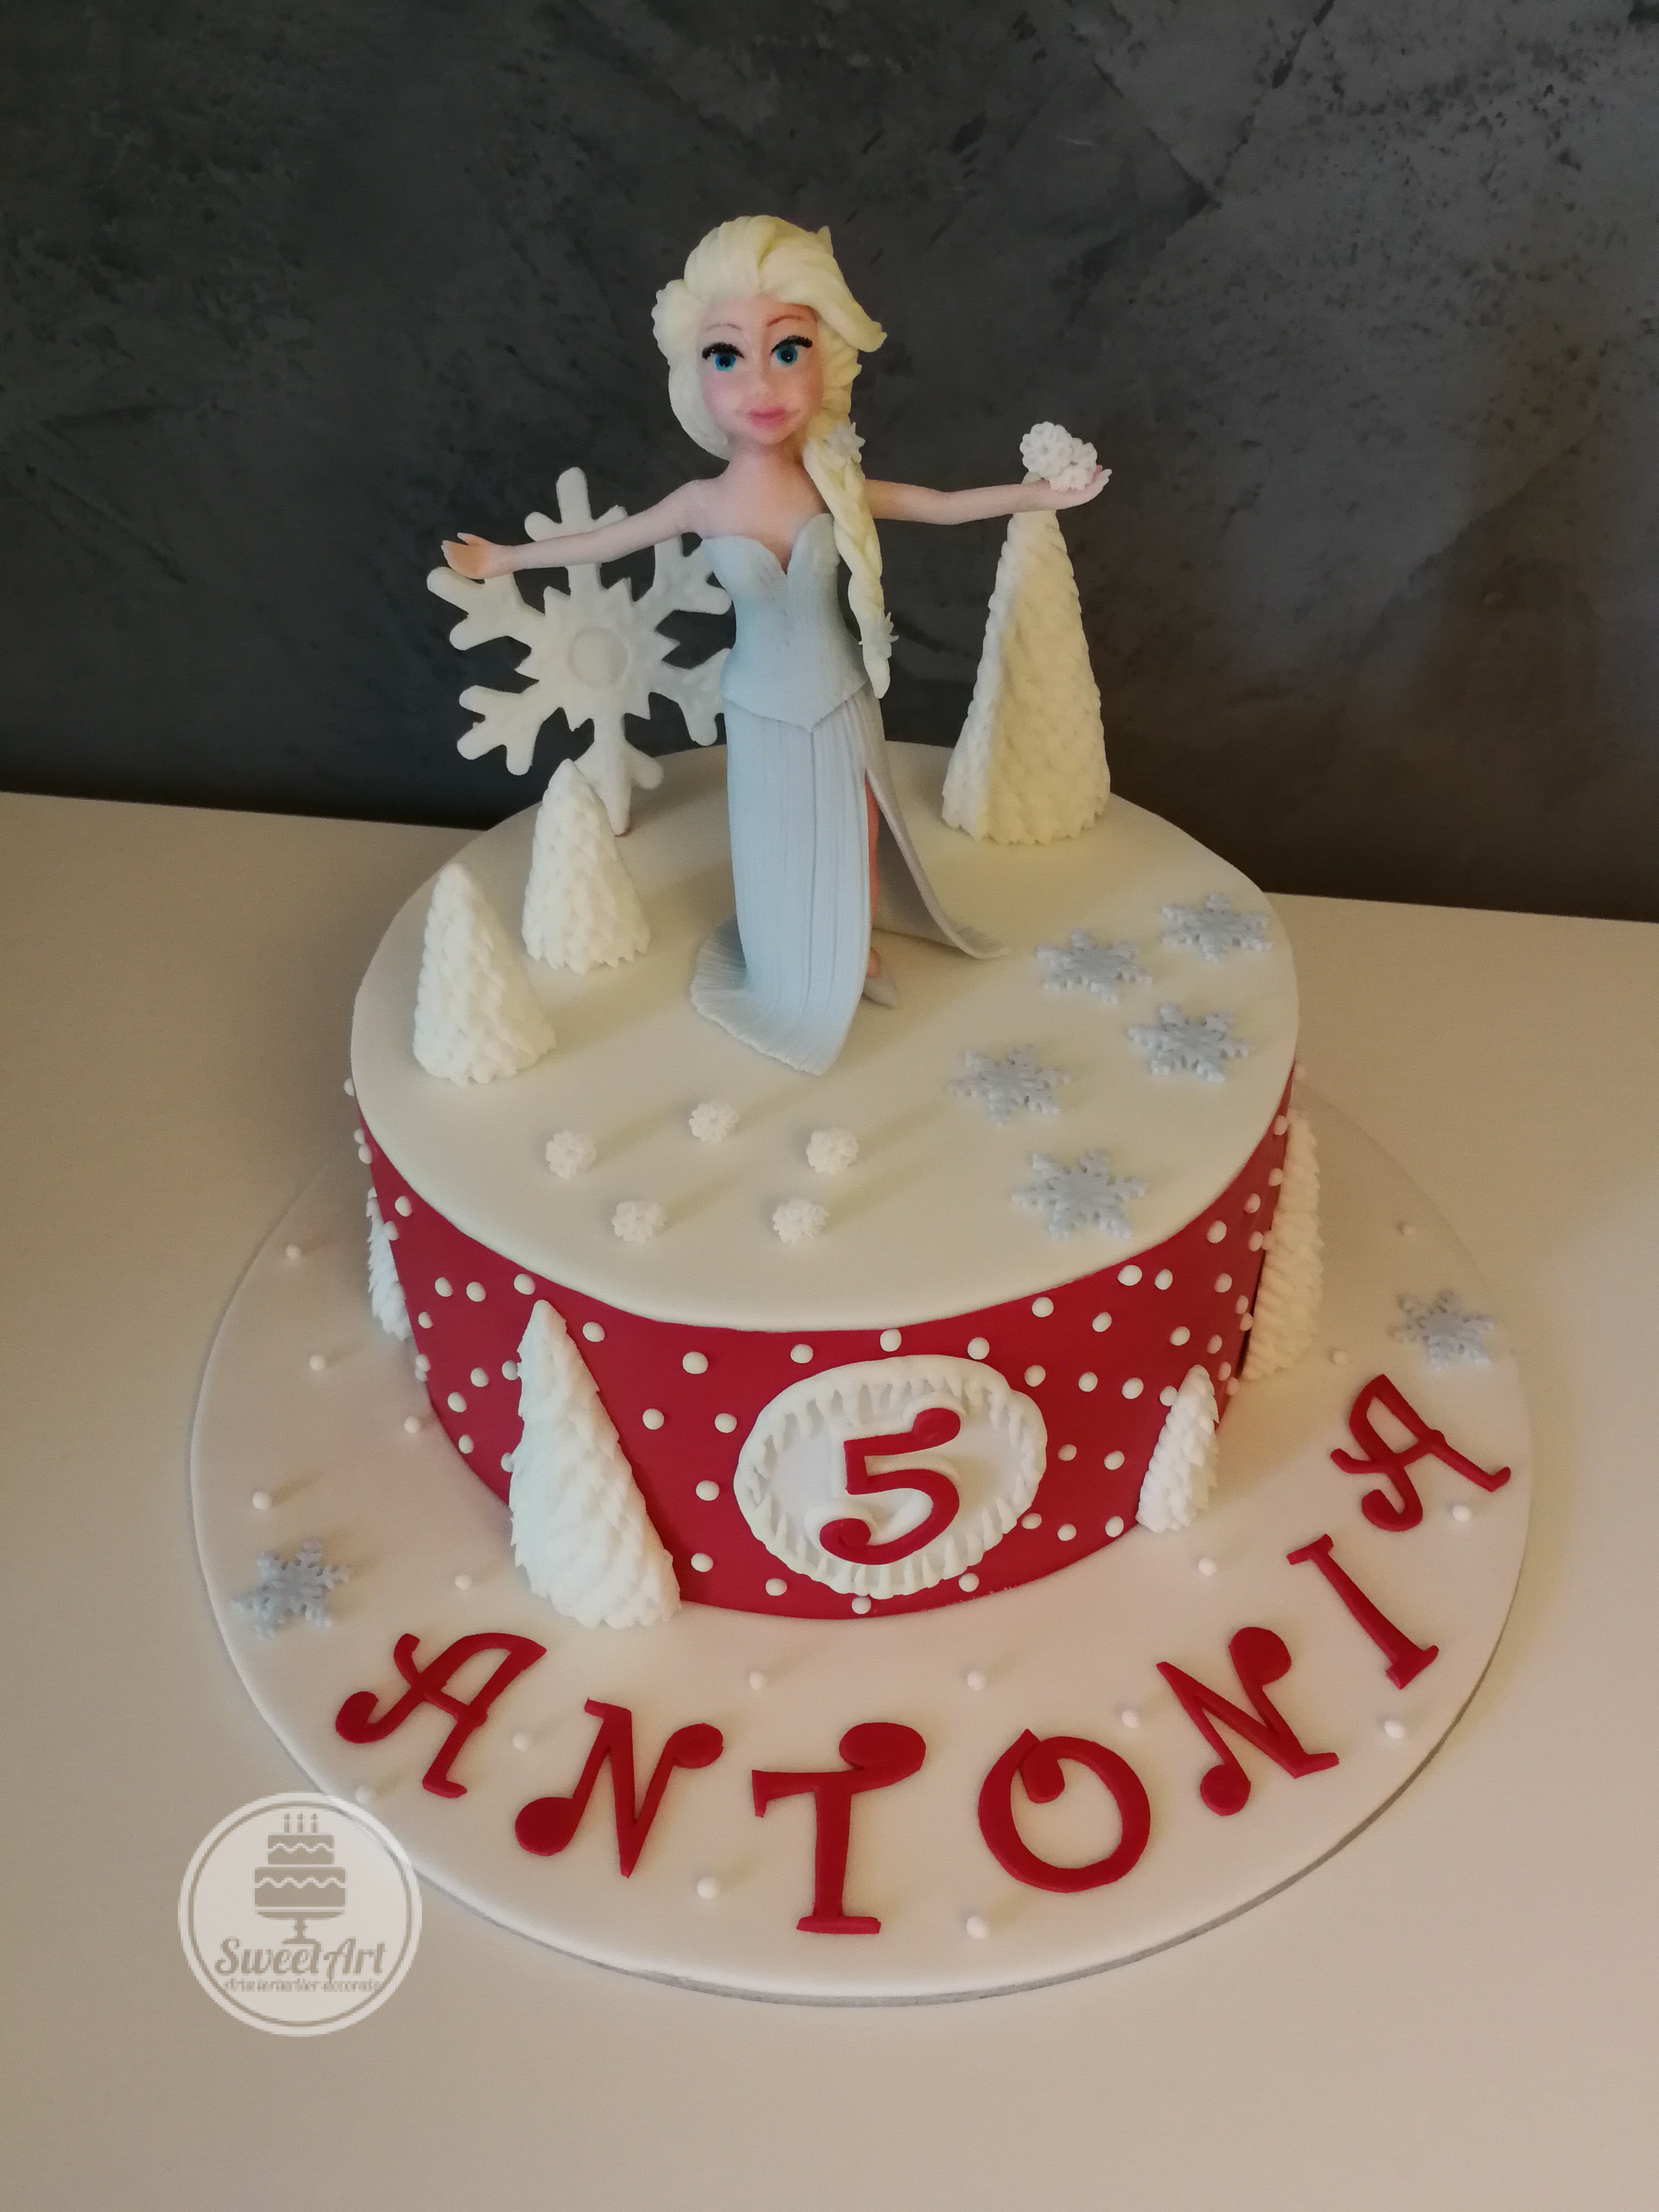 Tort roșu cu Elsa - Regina Gheții - Frozen - Regatul de gheață, brăduți, brazi înzăpeziți, fulgi de nea, fulgi de zăpadă, zăpadă, nea, tort roșu cu alb